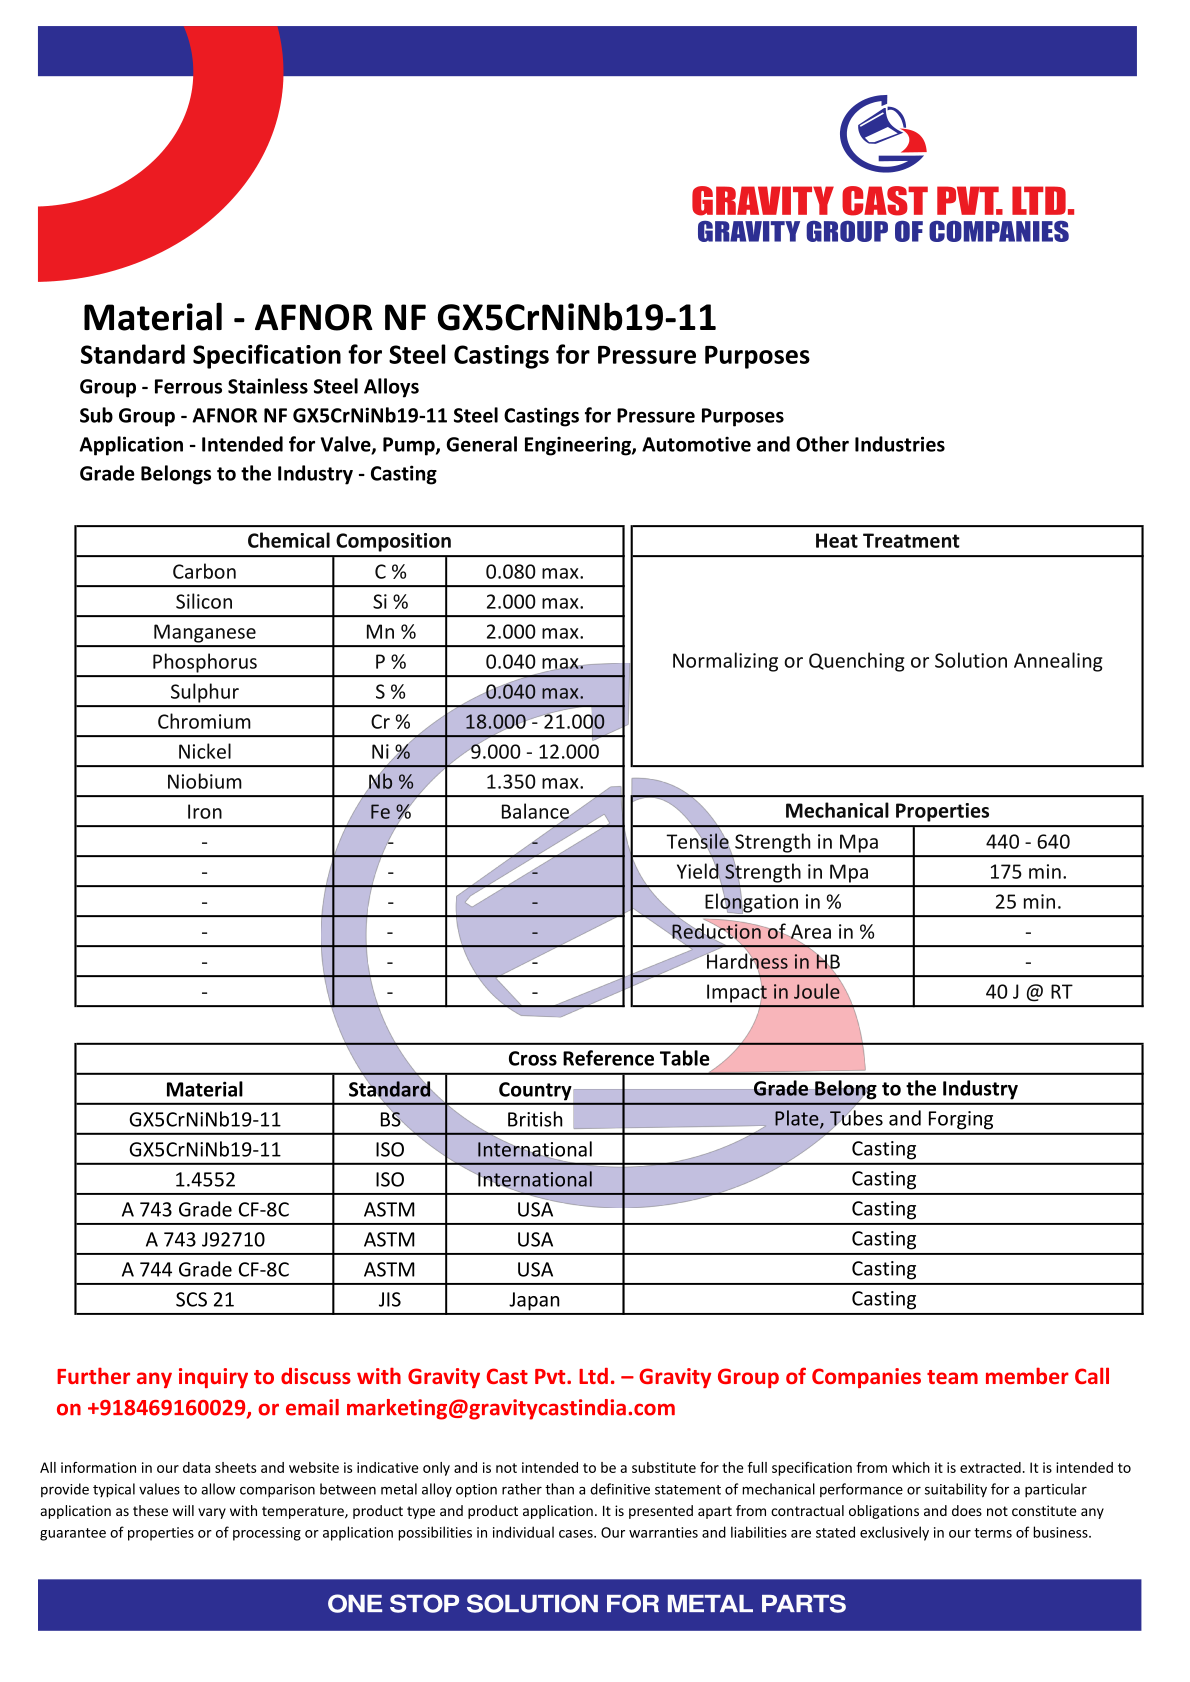 AFNOR NF GX5CrNiNb19-11.pdf